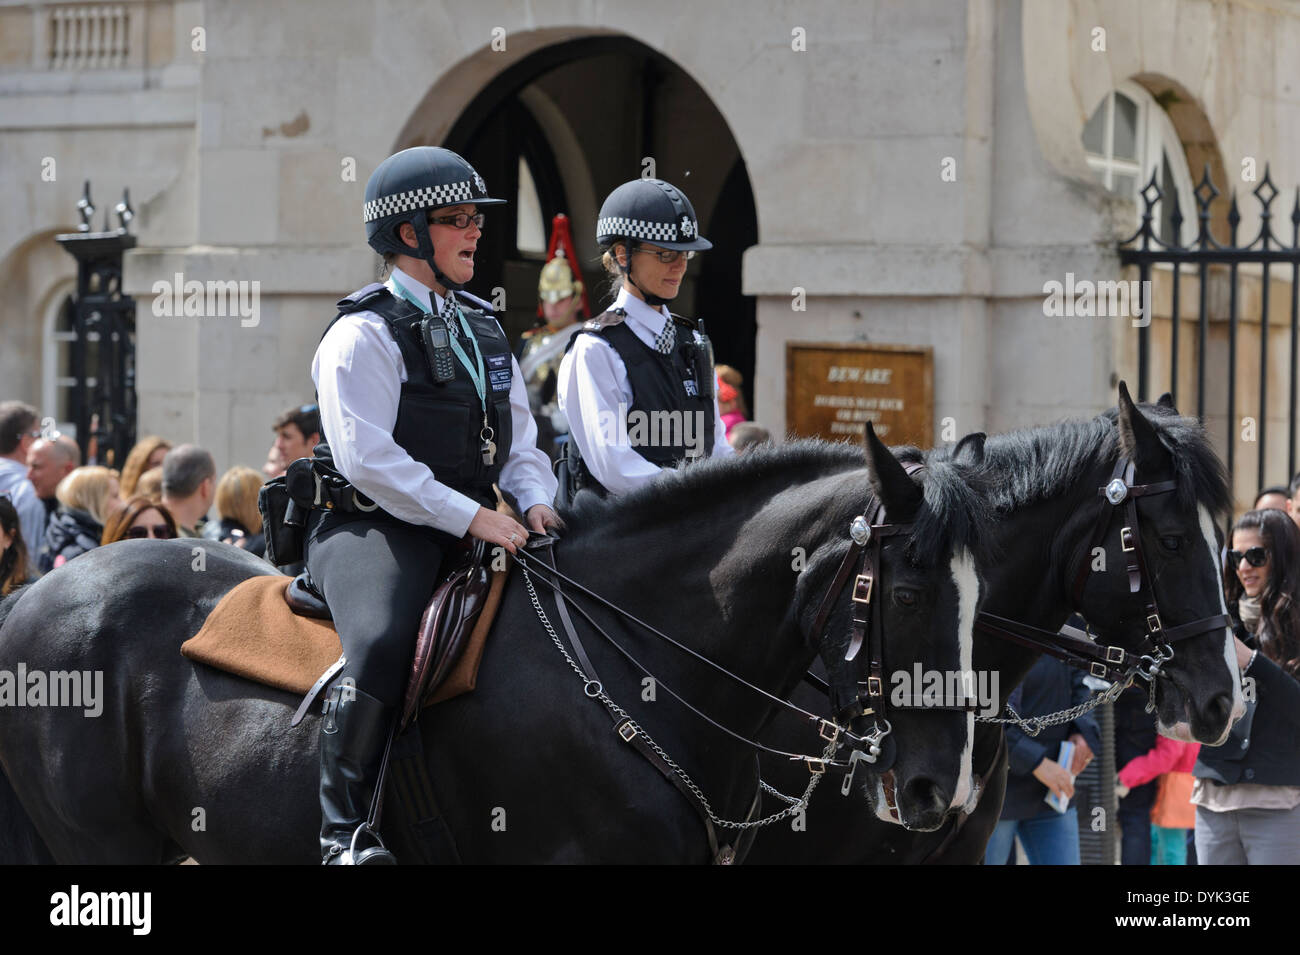 Deux agents de la Police métropolitaine de la police montée de la rue de Londres, Angleterre, Royaume-Uni. Banque D'Images